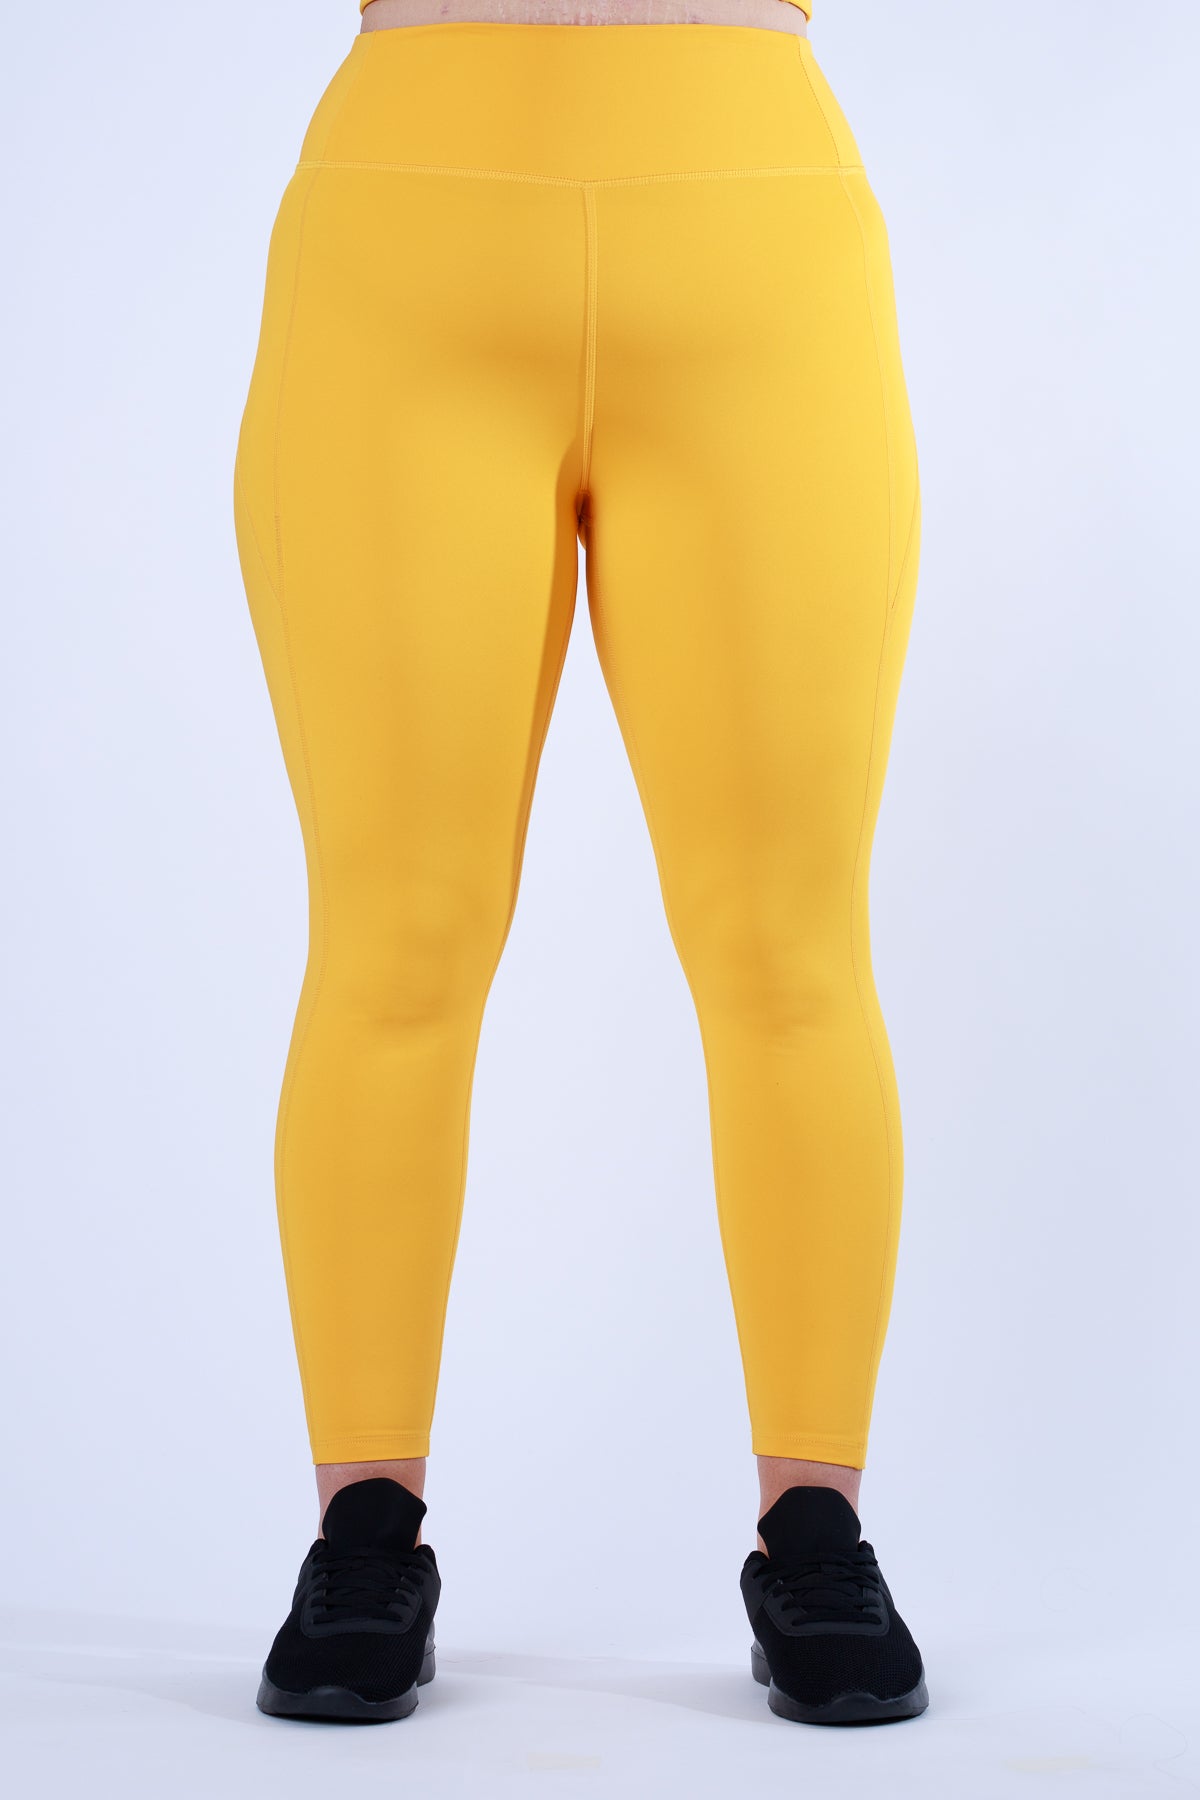 TLC Leggings in Lemon  Comfy leggings, Yellow leggings, High leggings